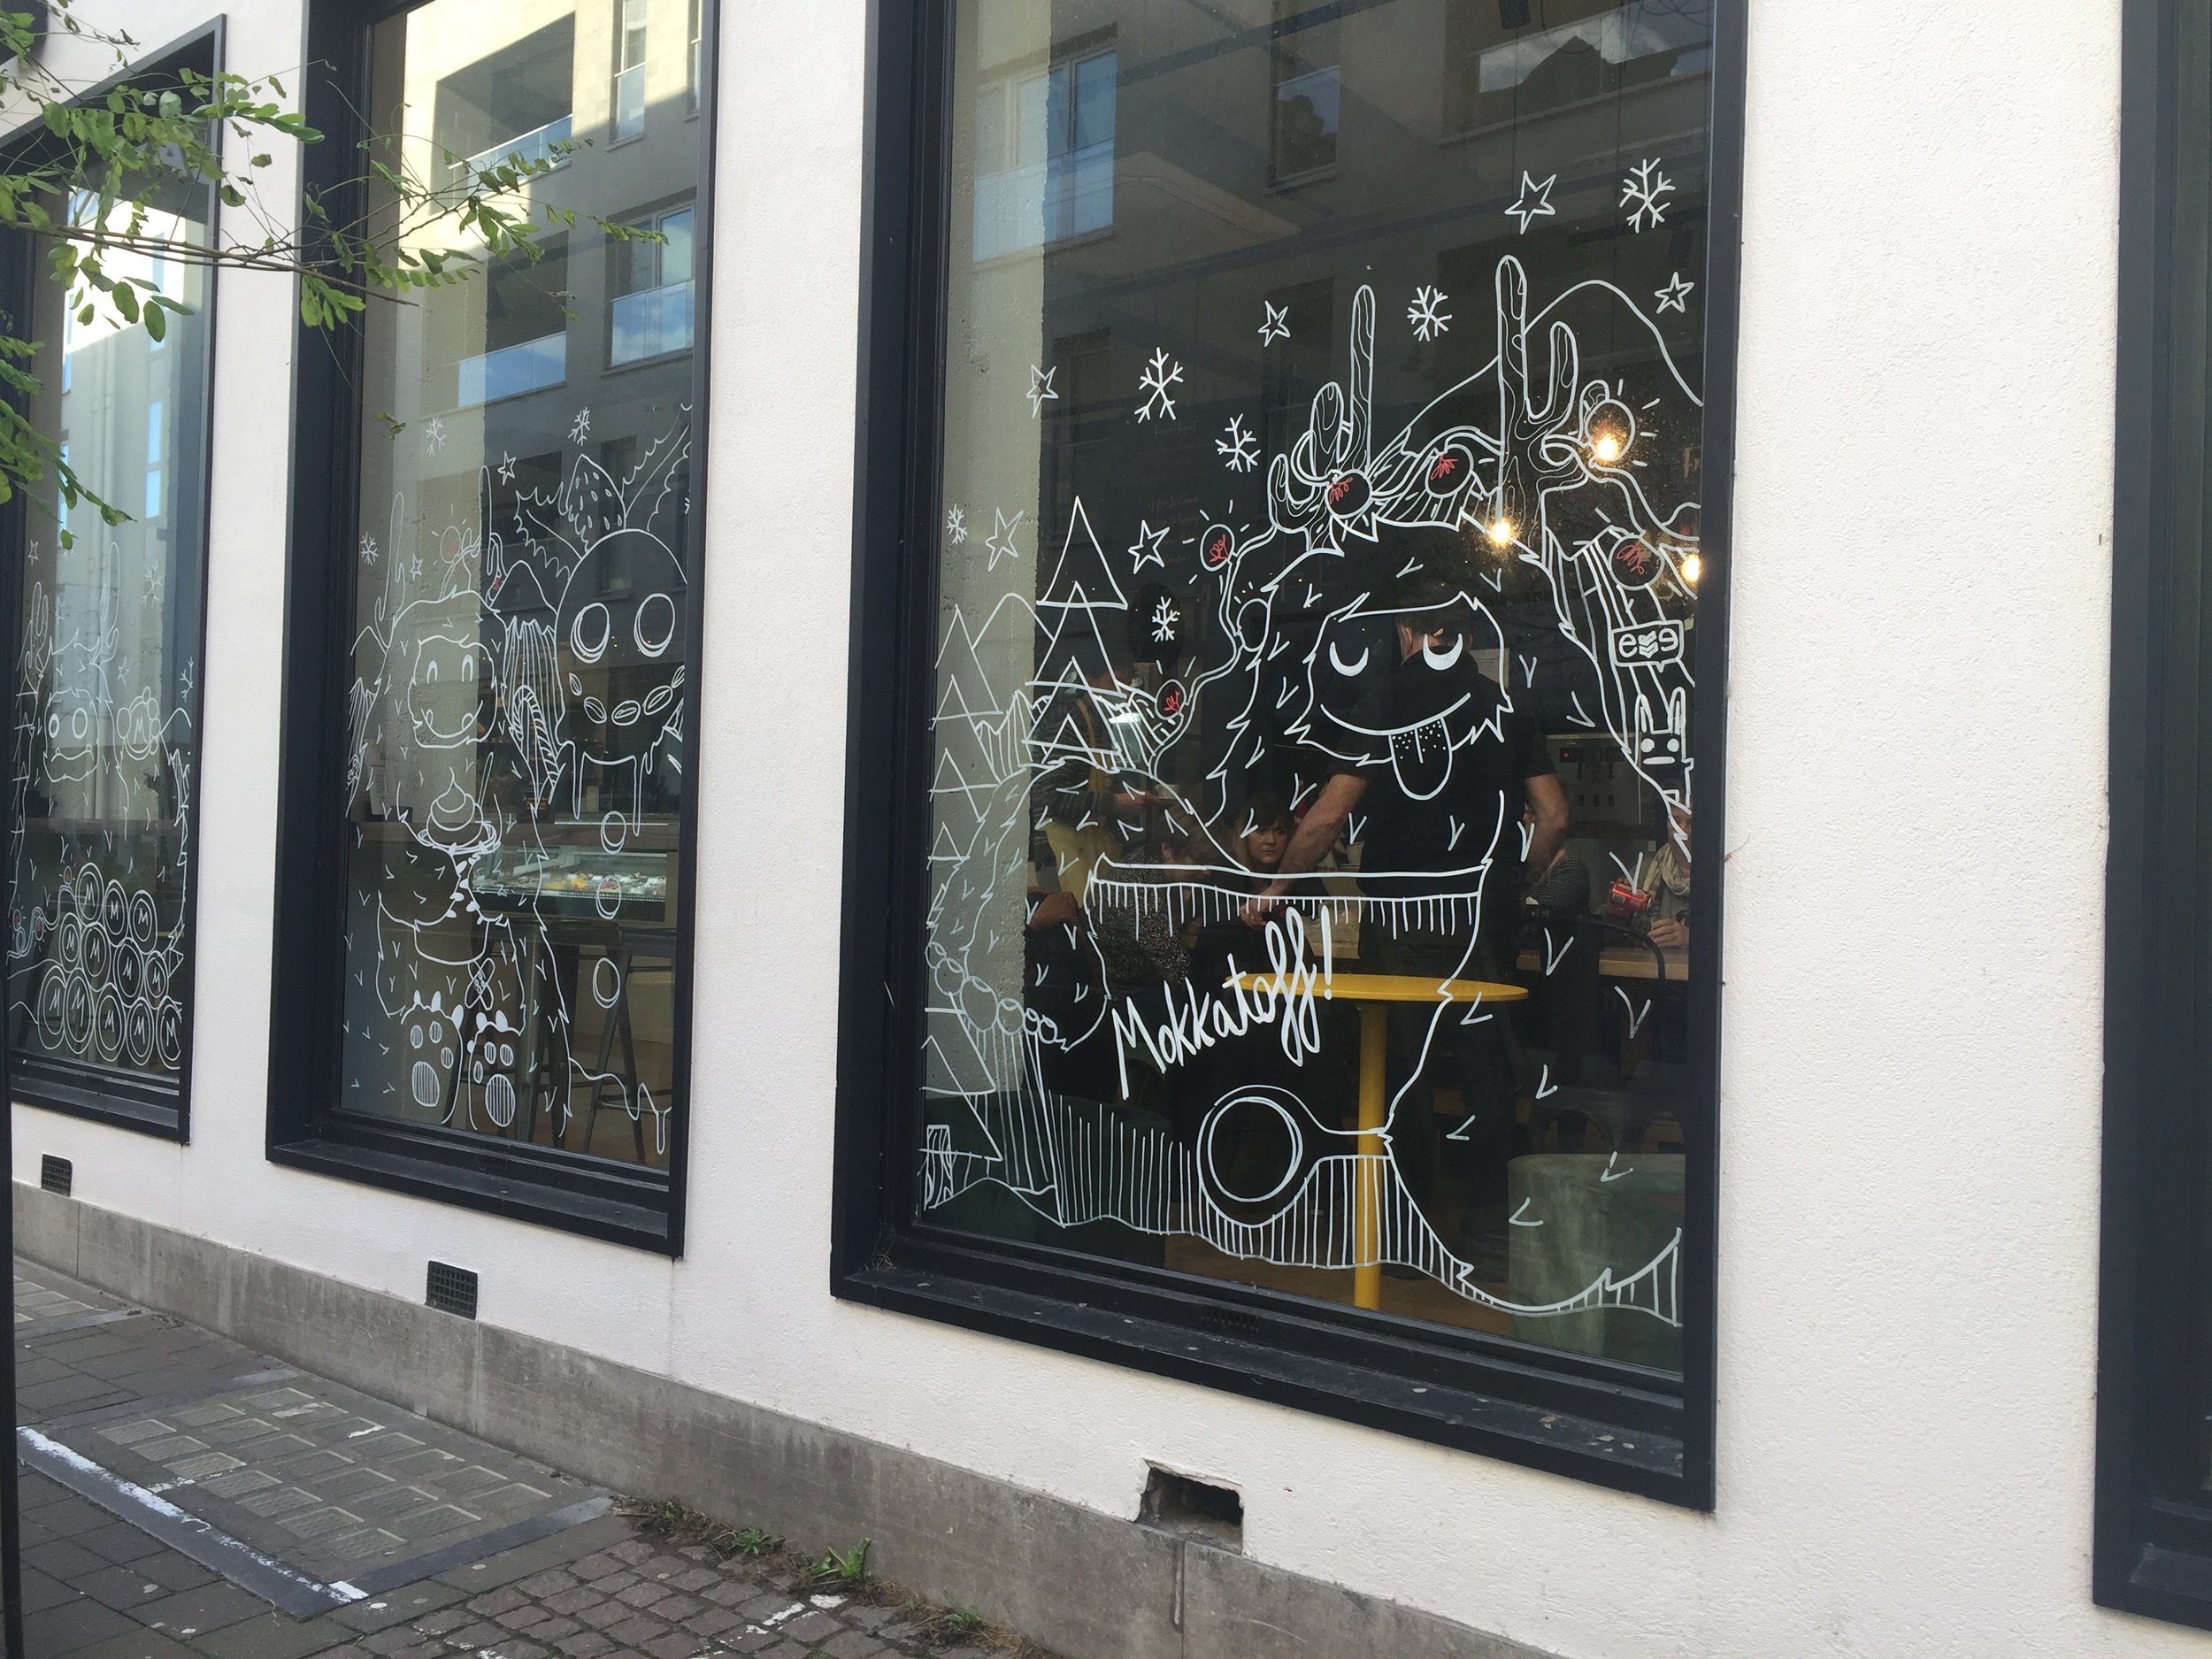 Christmas window art for Mokkatoff